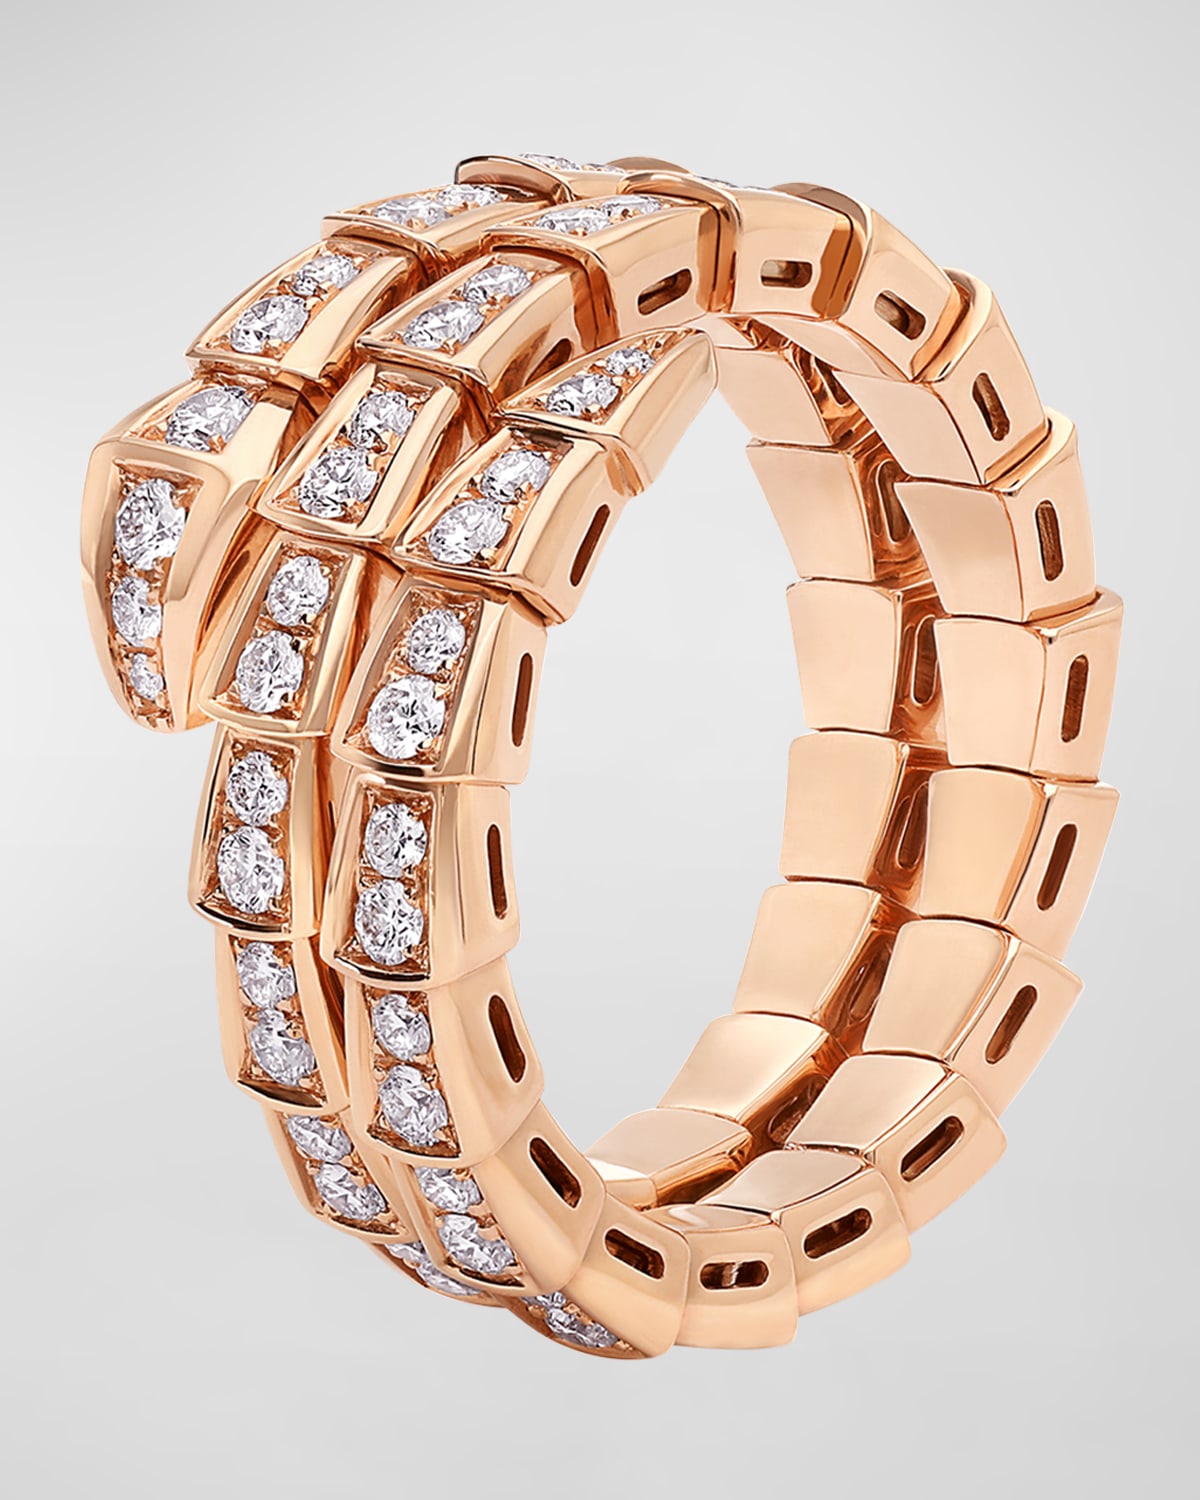 Serpenti Viper 2-Coil Ring in 18k Rose Gold and Diamonds, EU 55 / US 7.25